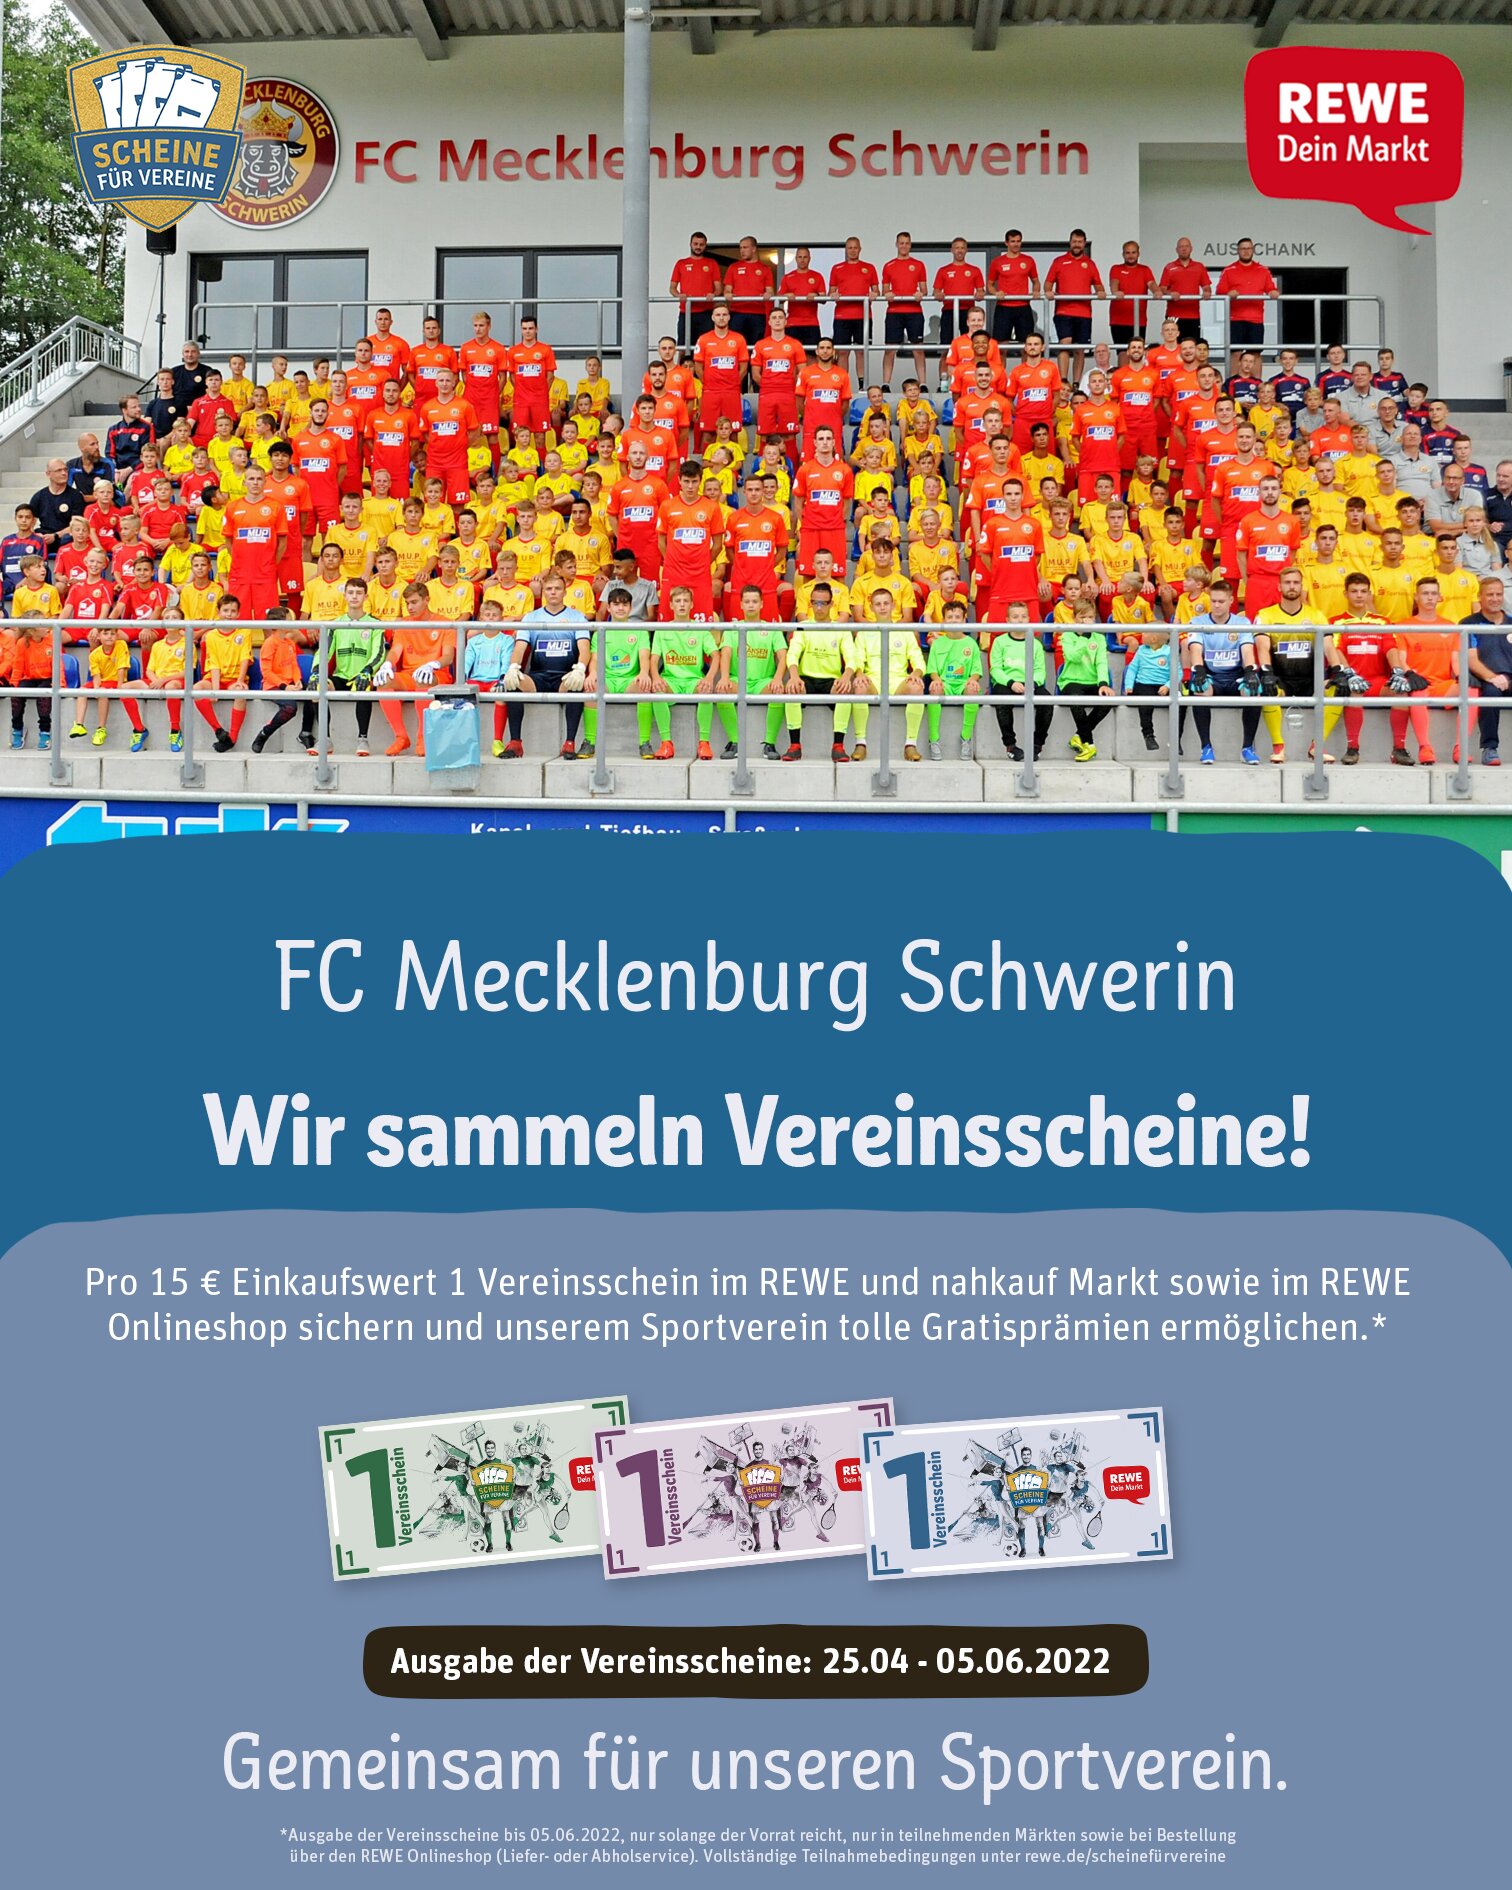 https://fcm-schwerin.de/wp-content/uploads/2022/04/REWE_Scheine-fuer-Vereine_Poster-Feed2.jpg